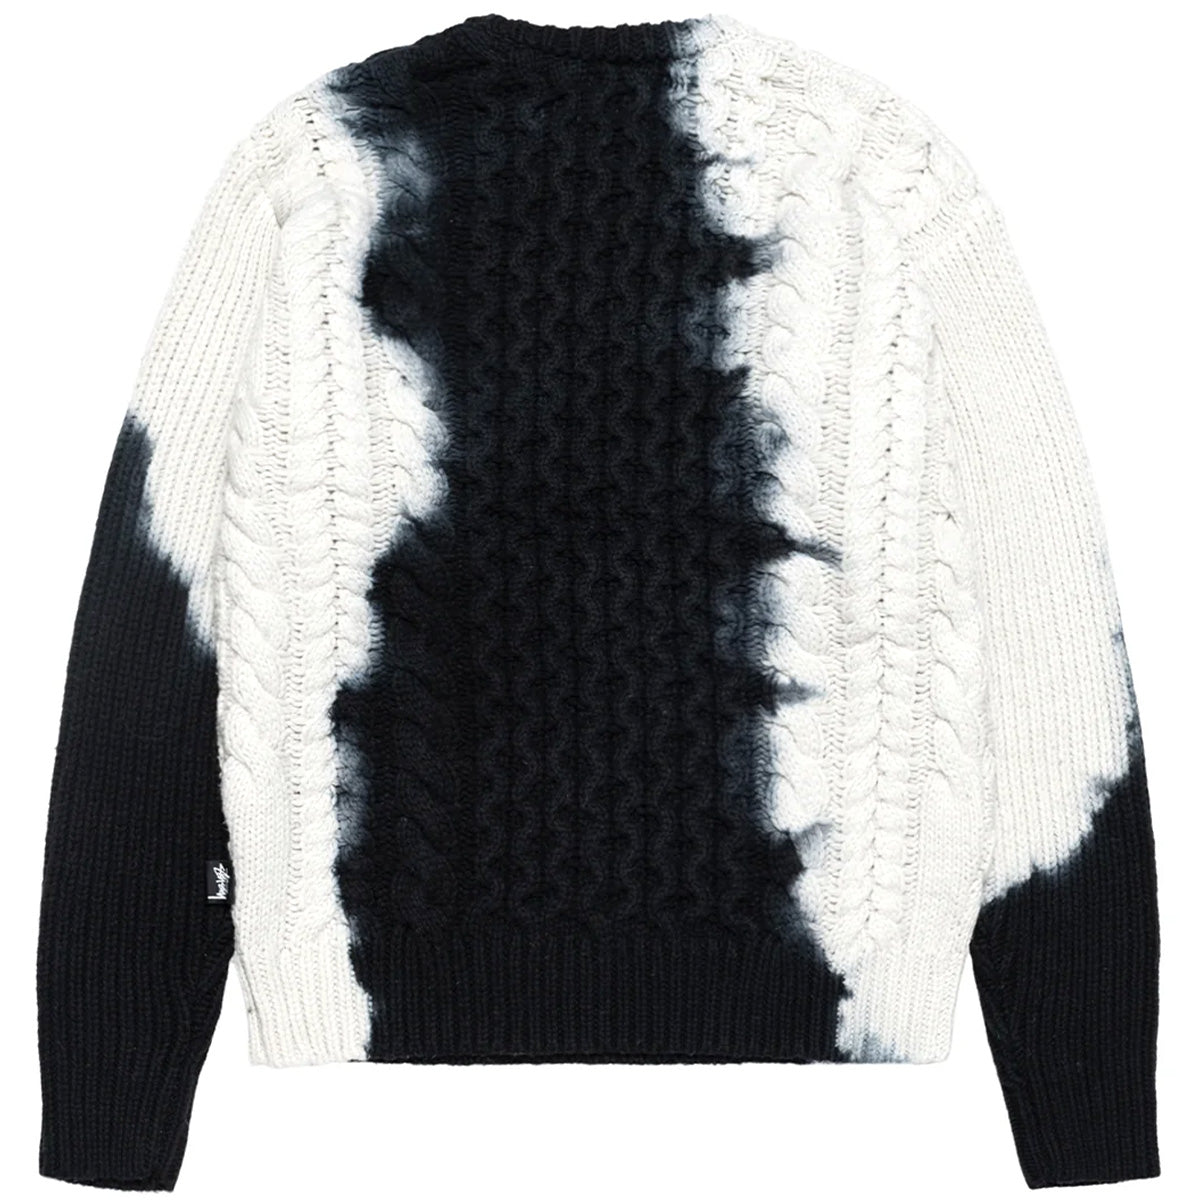 Stüssy Tie Dye Fisherman Sweater Black